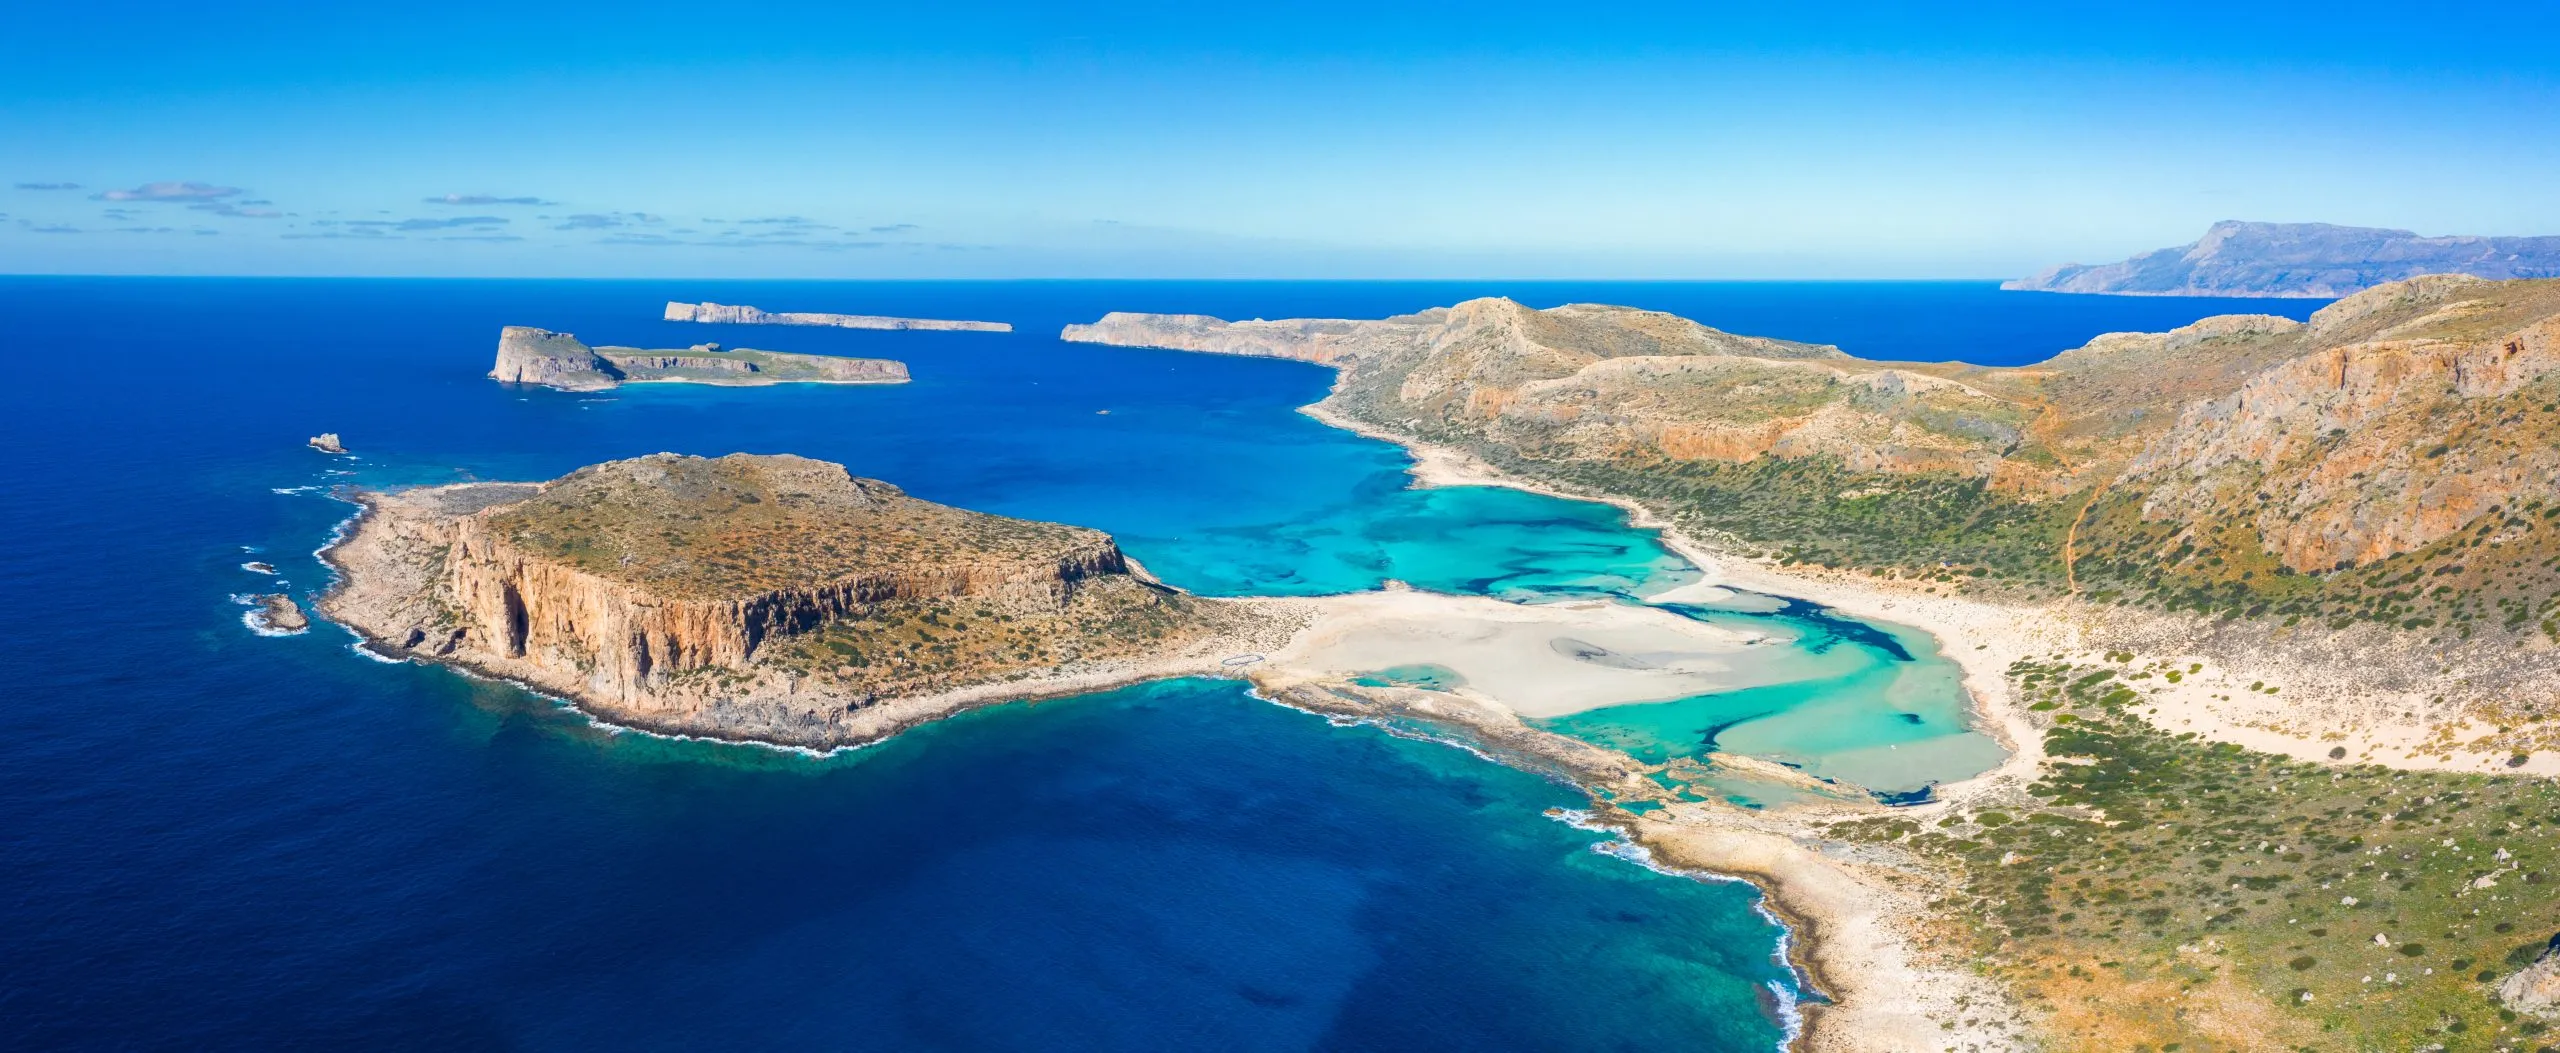 Vue imprenable sur le lagon de Balos avec ses eaux turquoise magiques, ses lagunes, ses plages tropicales de sable blanc et l'île de Gramvousa en Crète, Grèce.